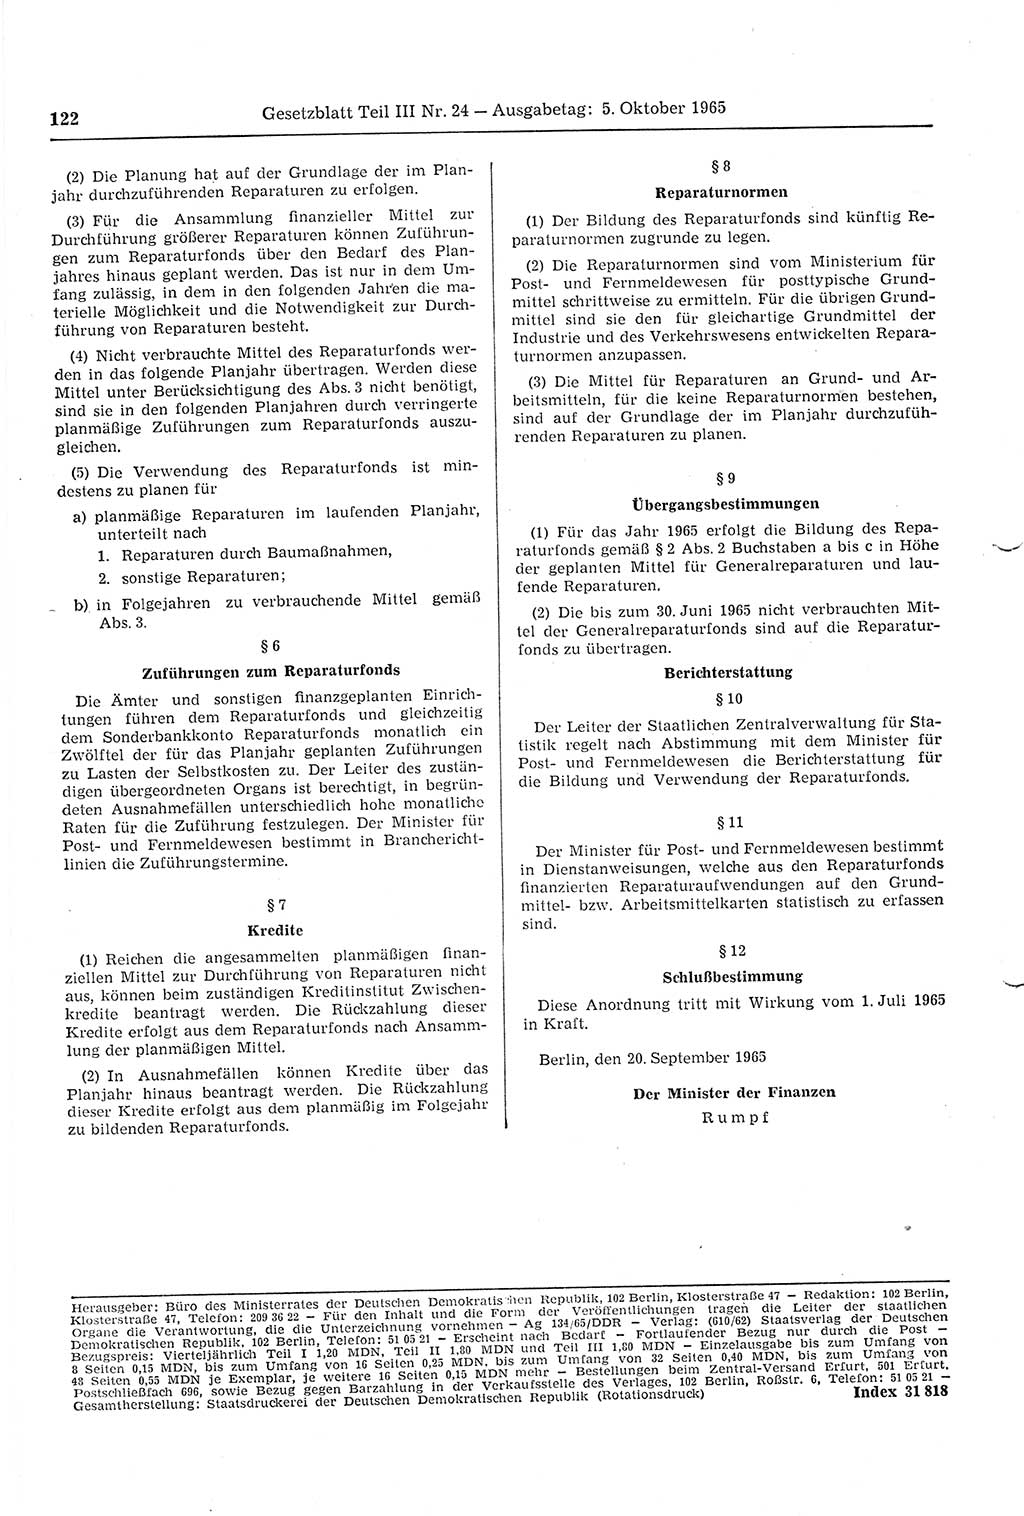 Gesetzblatt (GBl.) der Deutschen Demokratischen Republik (DDR) Teil ⅠⅠⅠ 1965, Seite 122 (GBl. DDR ⅠⅠⅠ 1965, S. 122)